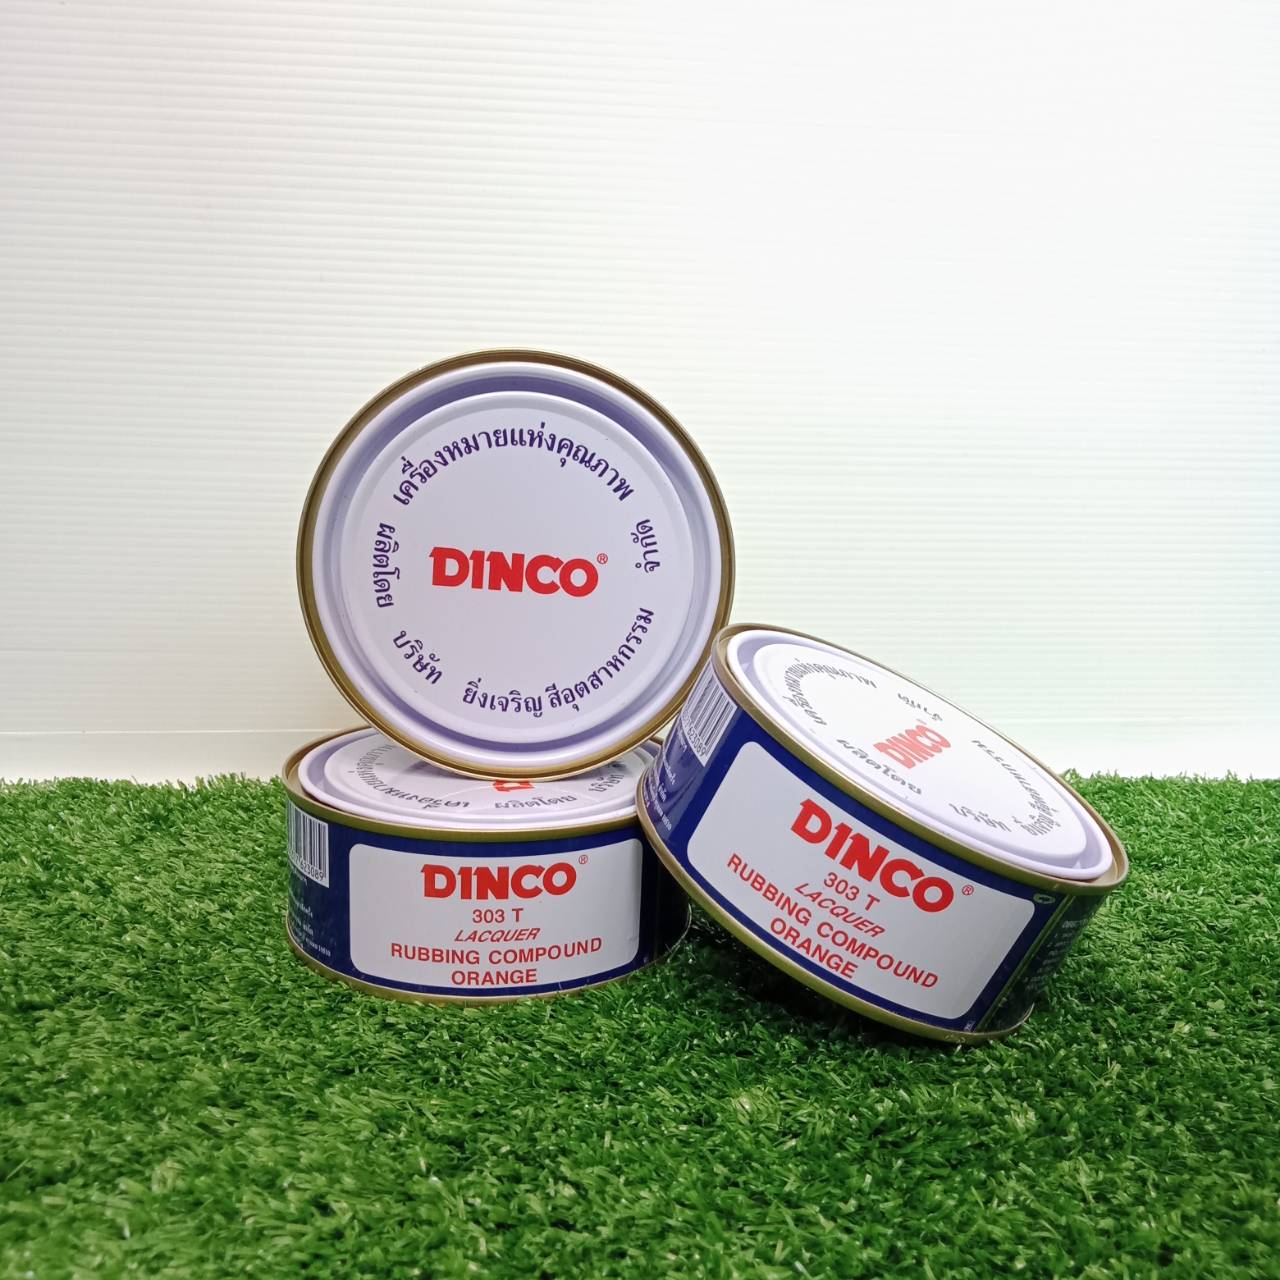 DINCO ดิงโก้ น้ำยาขัดรถขัดหยาบ (สีส้ม) ขนาด230 กรัม